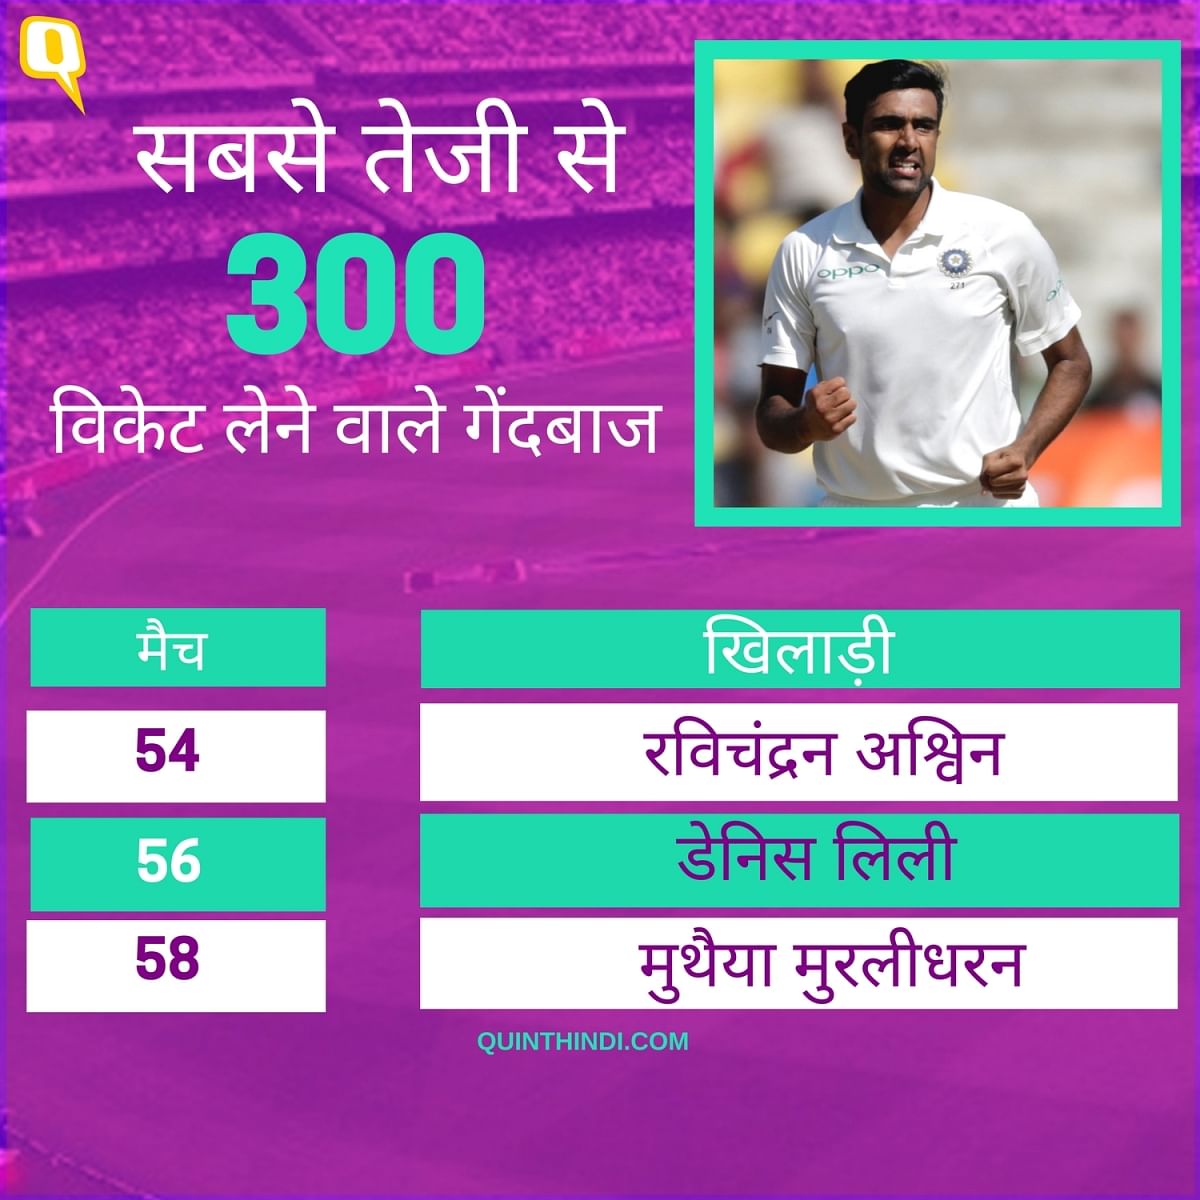 टीम इंडिया के ऑफ स्पिनर रविचंद्रन अश्विन महान स्पिनर मुथैया मुरलीधरन के टेस्ट रिकार्ड की बराबरी से एक कदम दूर हैं. 